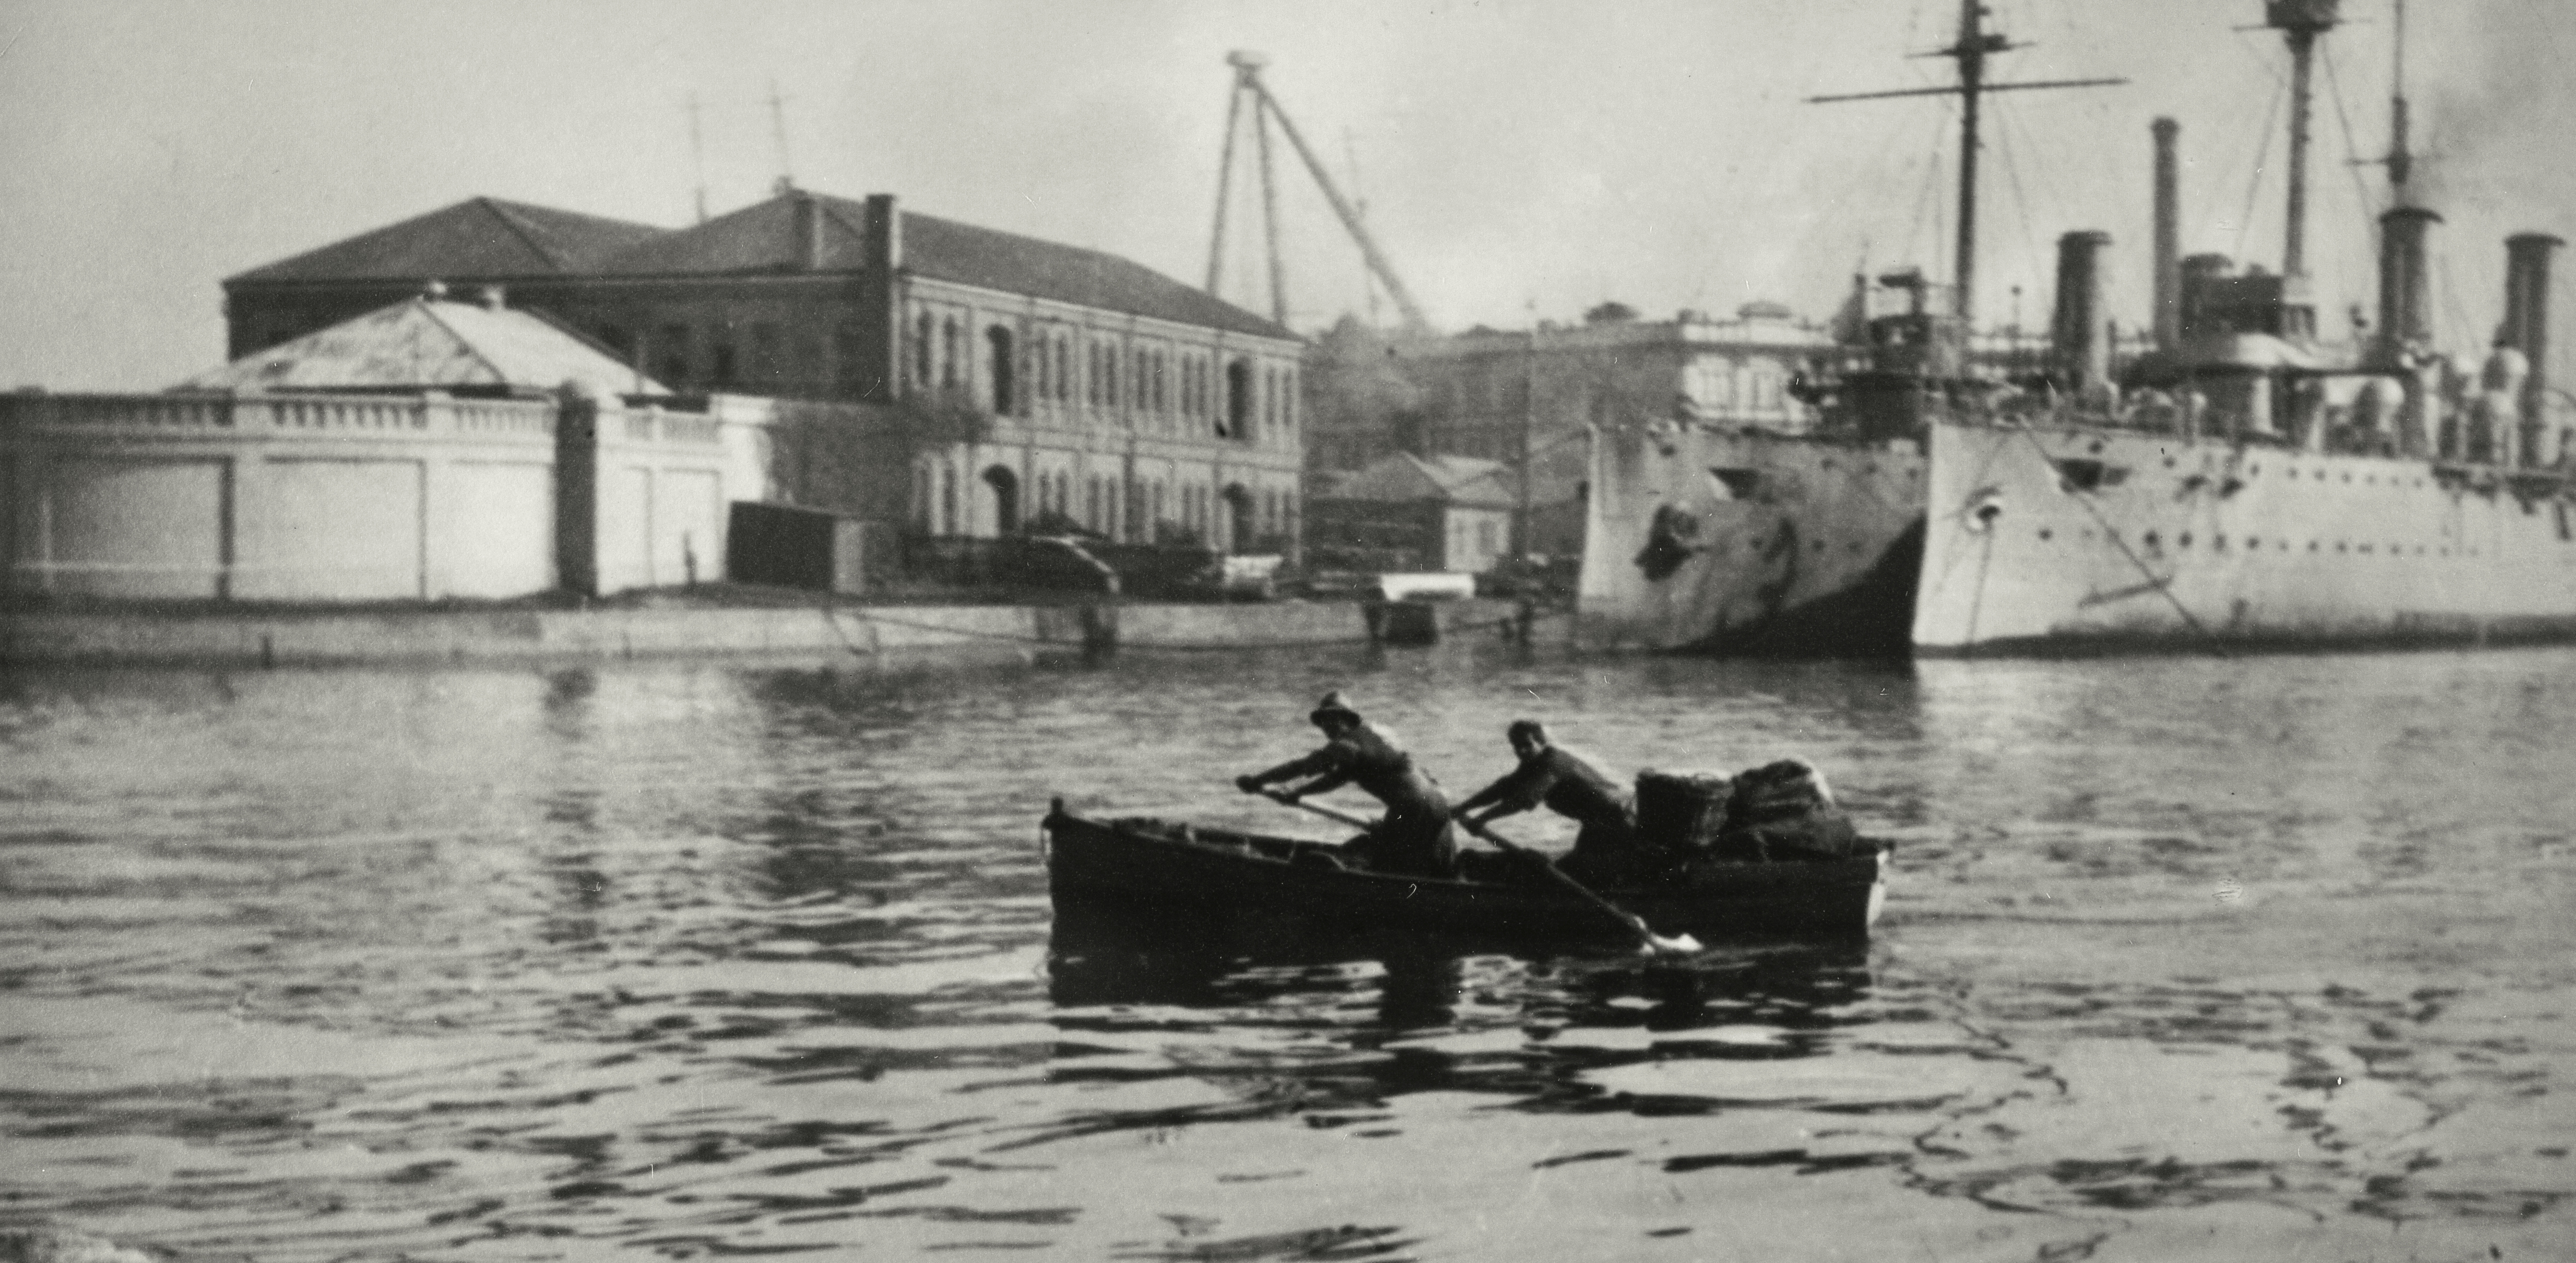 World War I war ships at Garden Island awaiting demolition